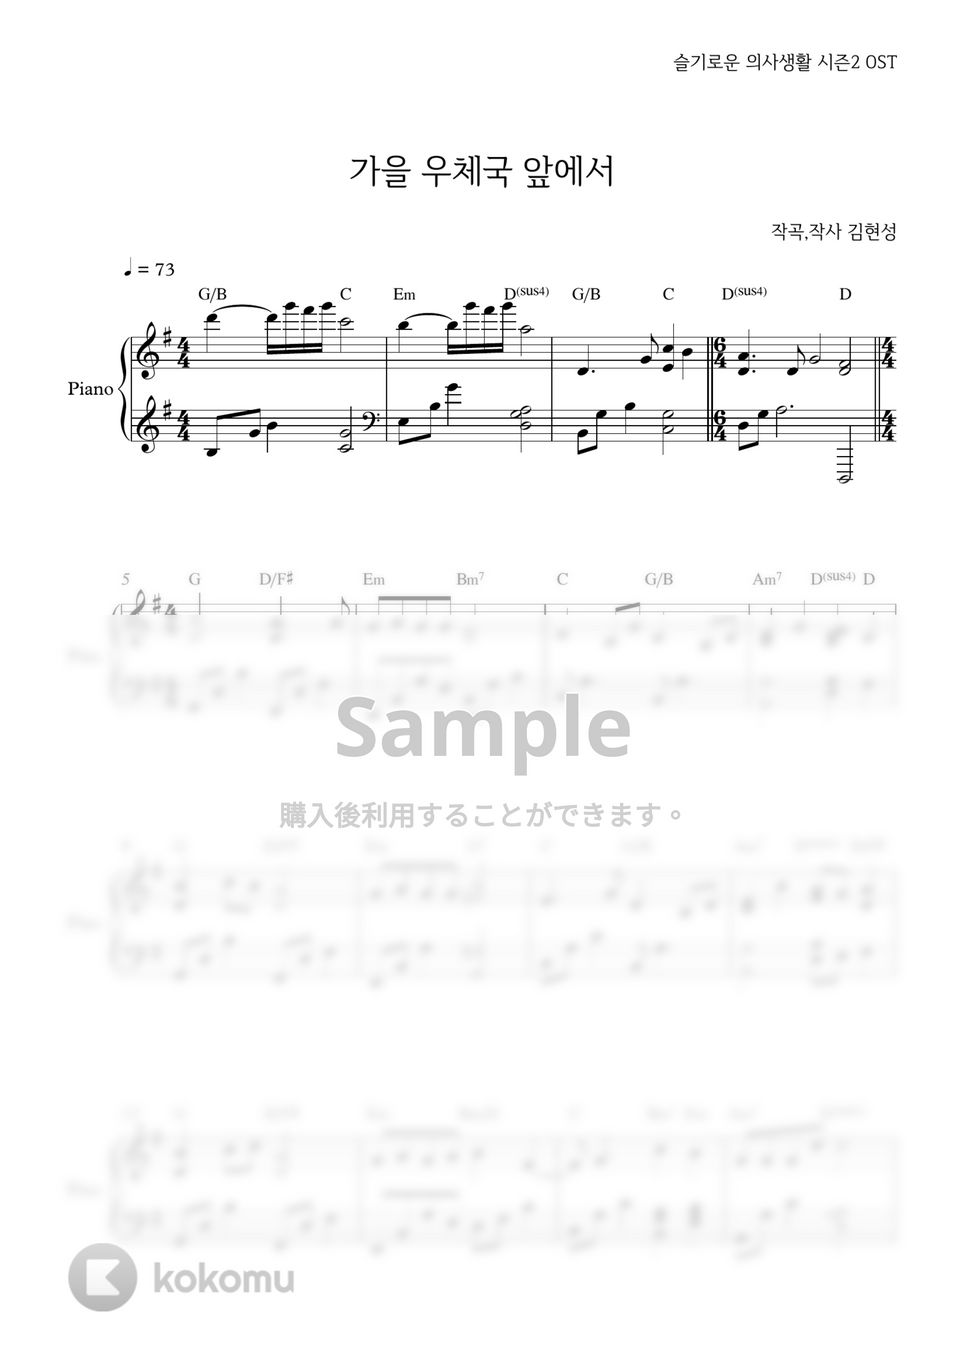 キム・デミョン - 秋の郵便局の前で (賢い医師生活シーズン2 / Easy ver.) by PIANOiNU